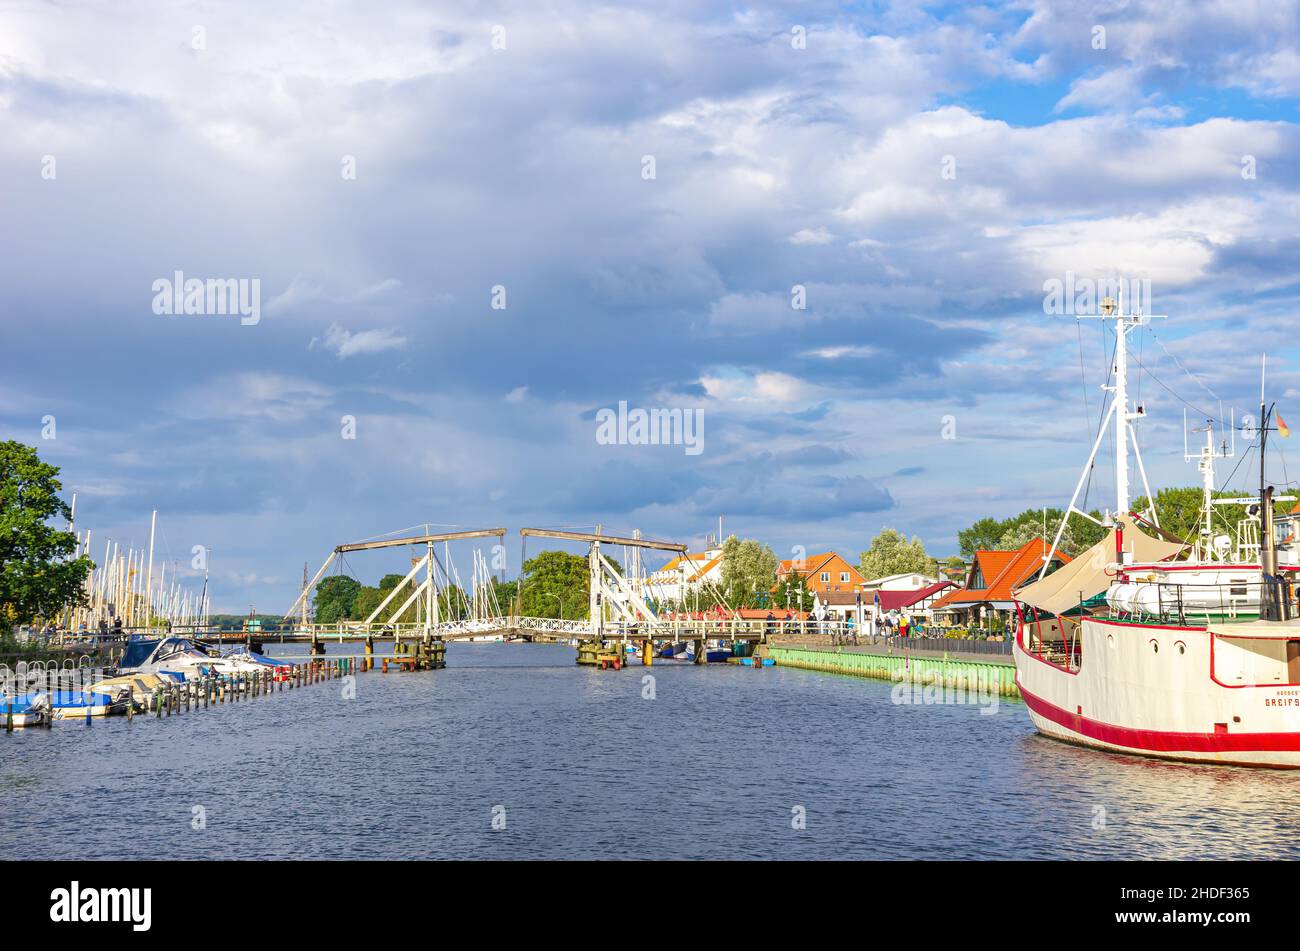 Malerischer Blick auf die alte Wieck-Holzbascule-Brücke über den Ryck, den Stadthafen Greifswald-Wieck, die Hansestadt Greifswald, Deutschland. Stockfoto